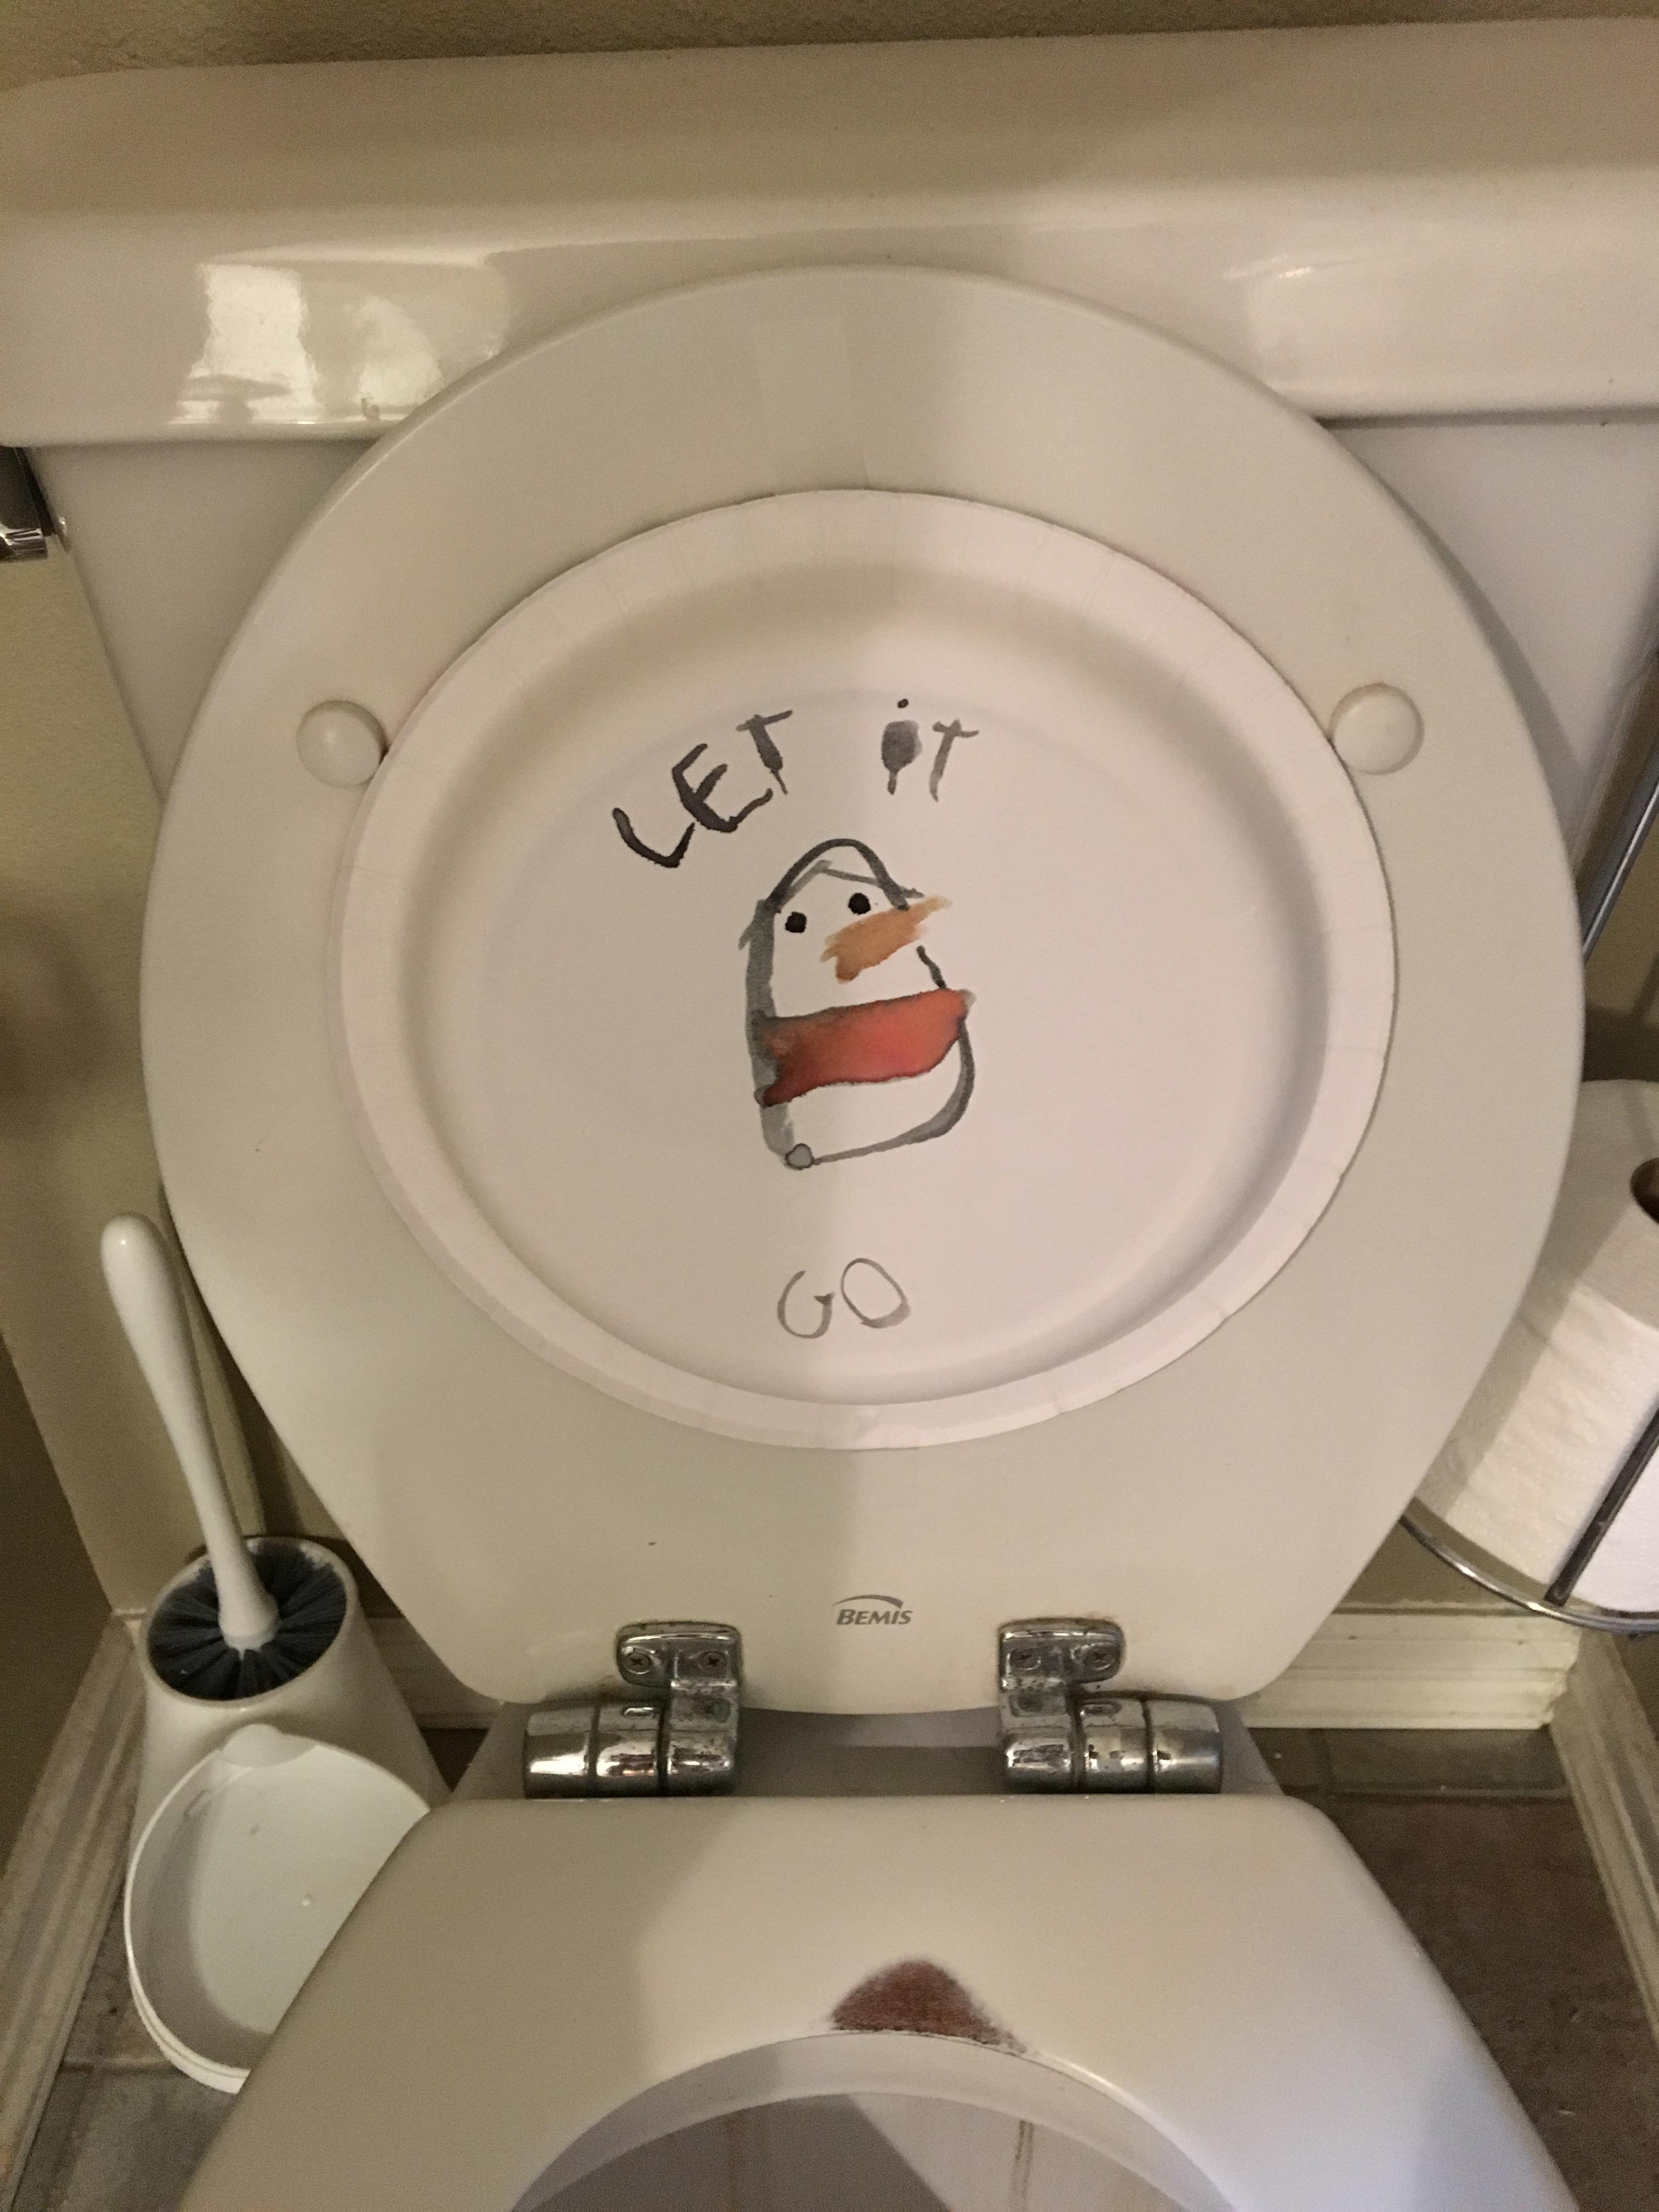 toilet seat - Let